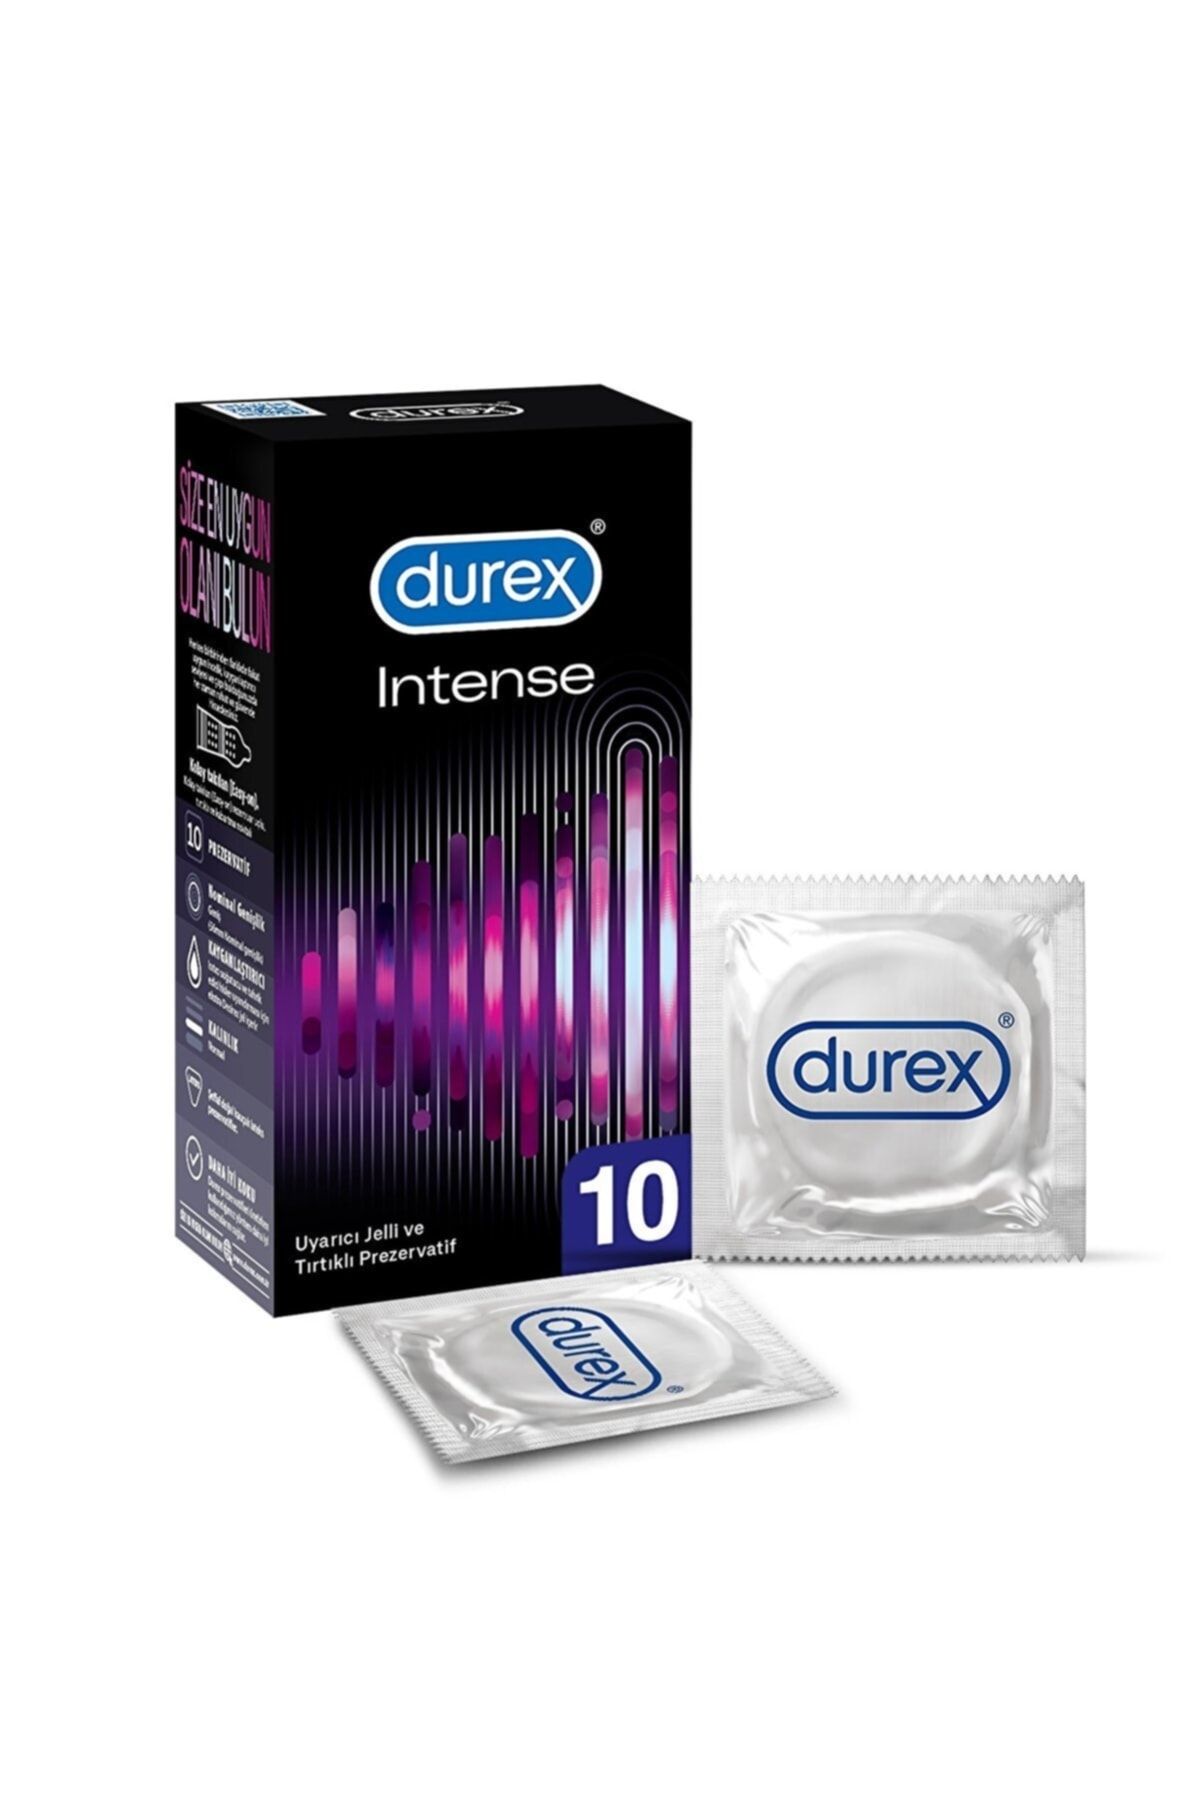 Durex Prezervatif Intense Ekstra Uyarıcı 10lu